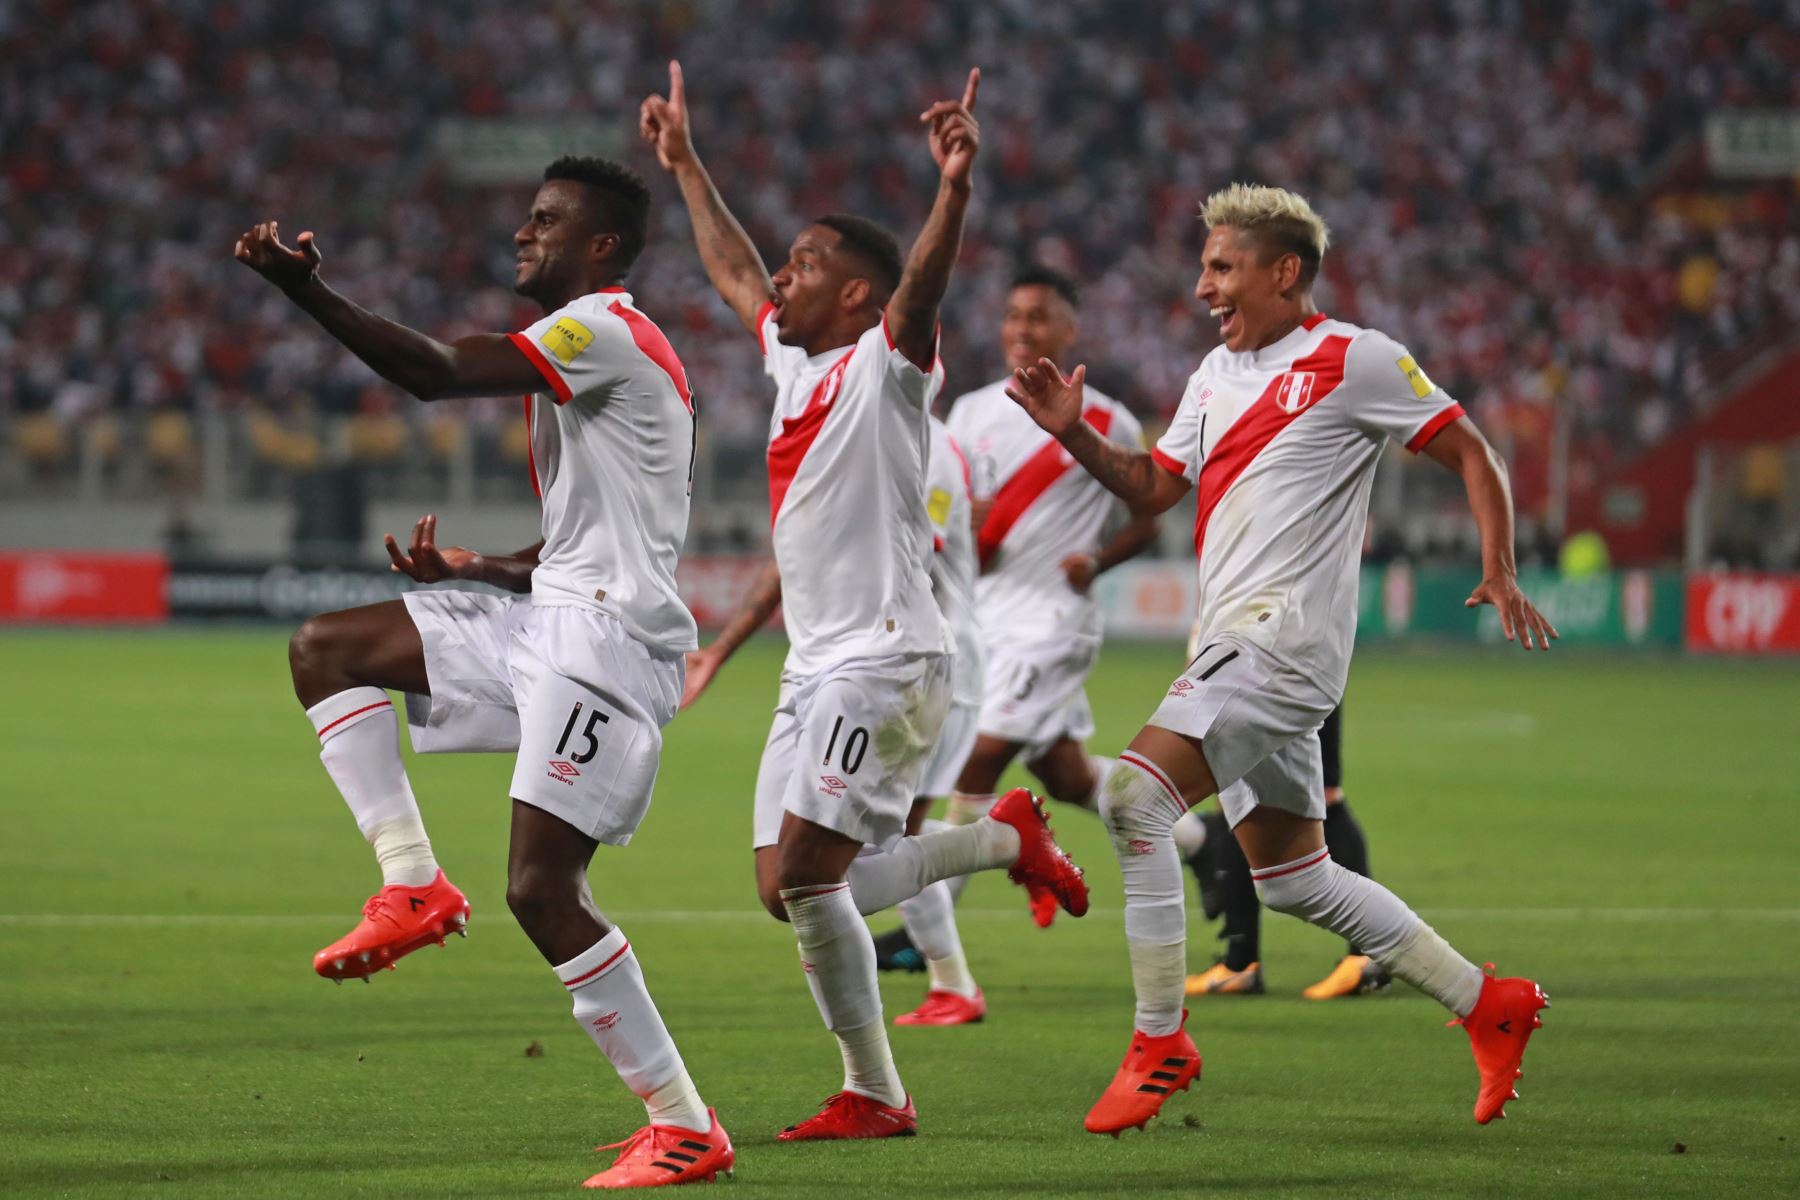 Clasificación de selección de fútbol de Perú a Mundial Rusia 2018. ANDINA/Carlos Lezama